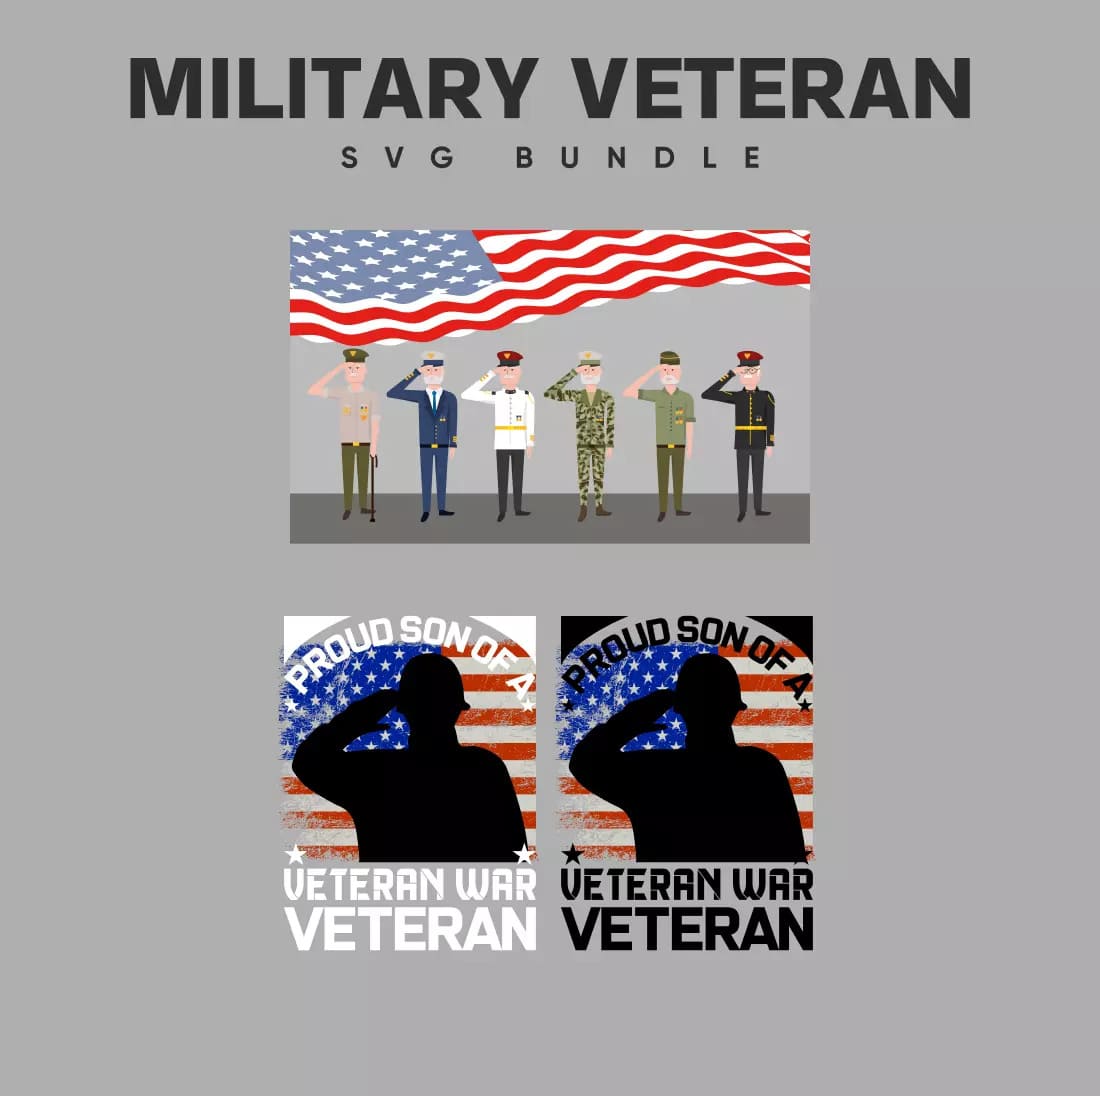 Military Veteran SVG Bundle Preview.